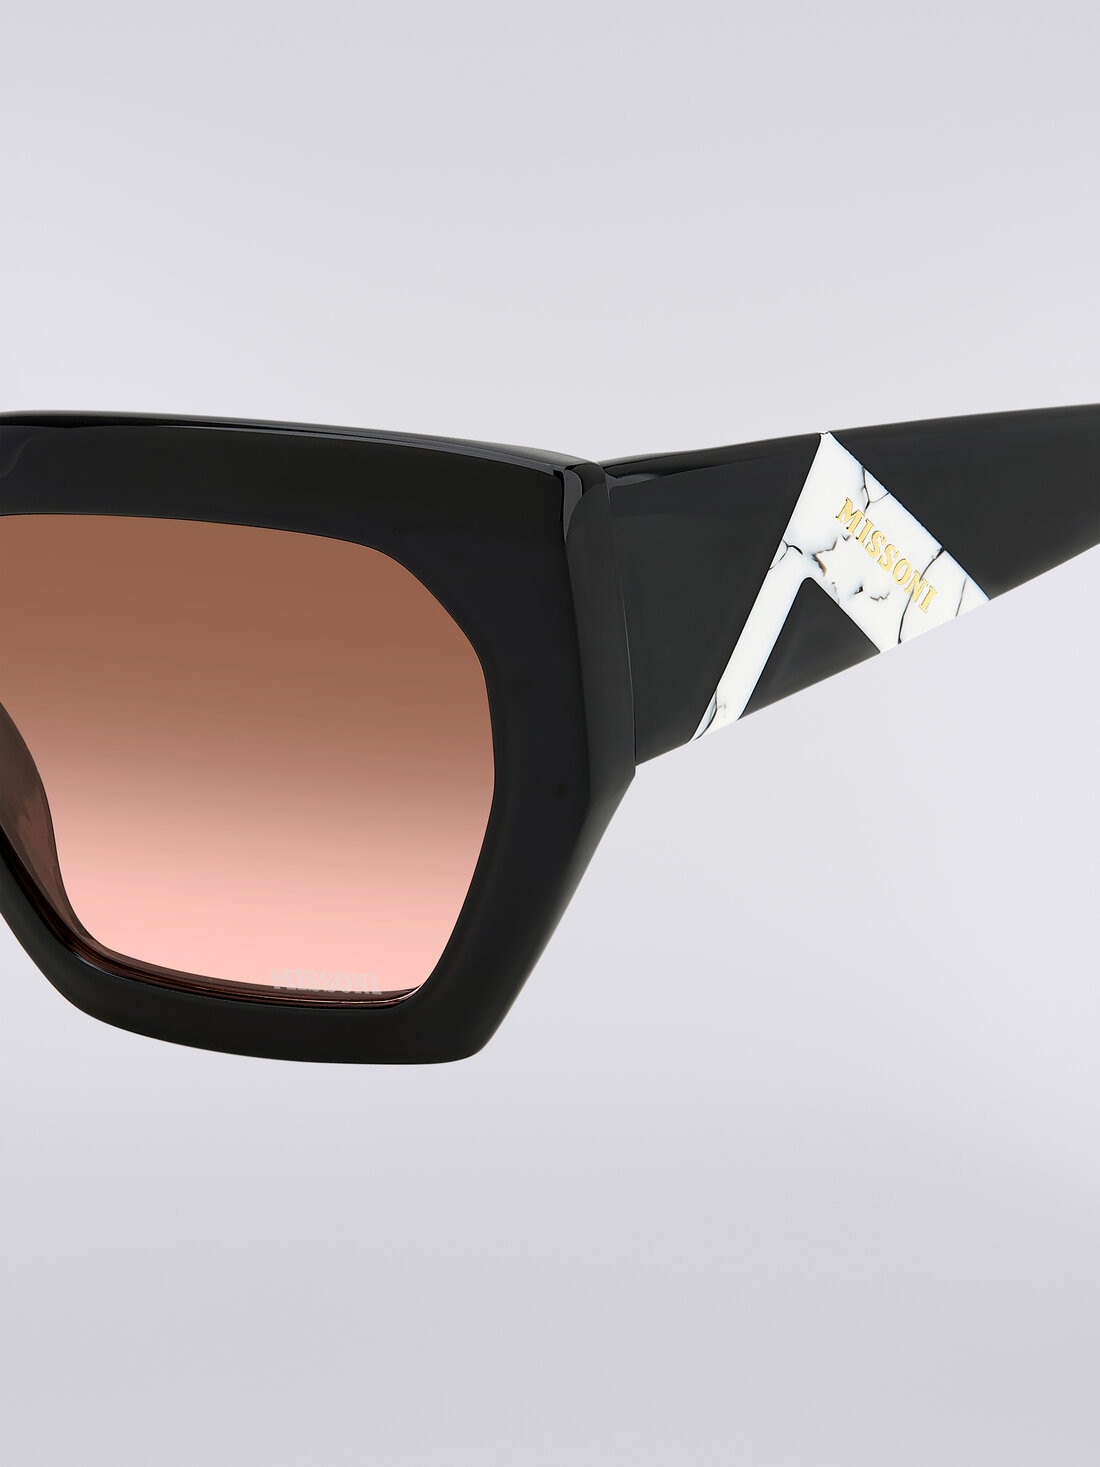 Sonnenbrille mit quadratischer Fassung, kontrastierendem Einsatz und Logo, Mehrfarbig  - 8053147194912 - 3